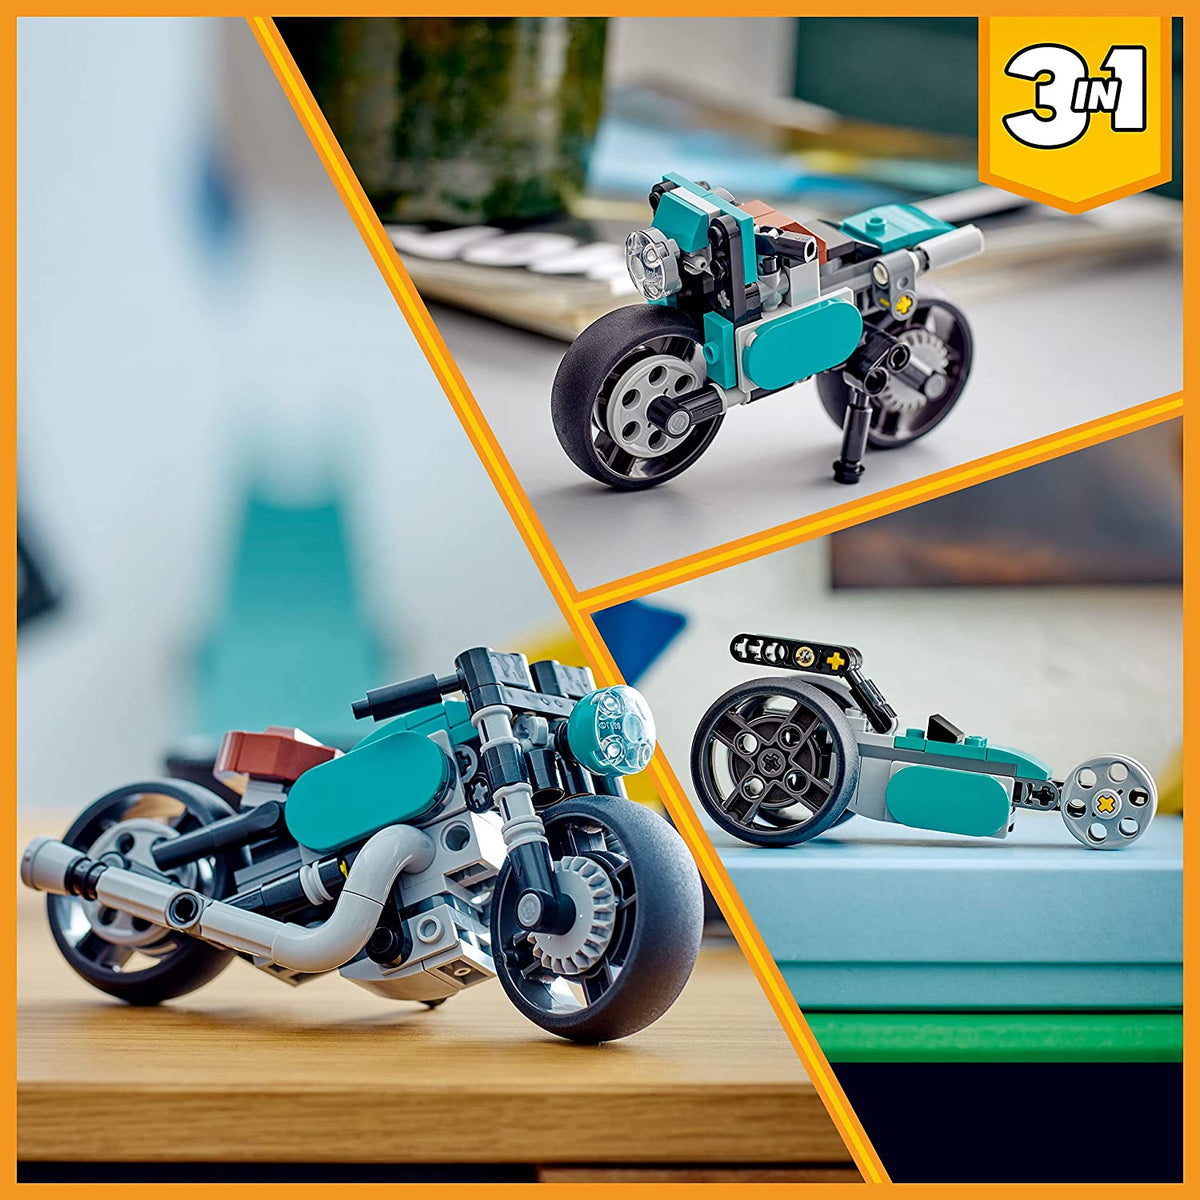 CREATOR 31135: Vintage Motorcycle